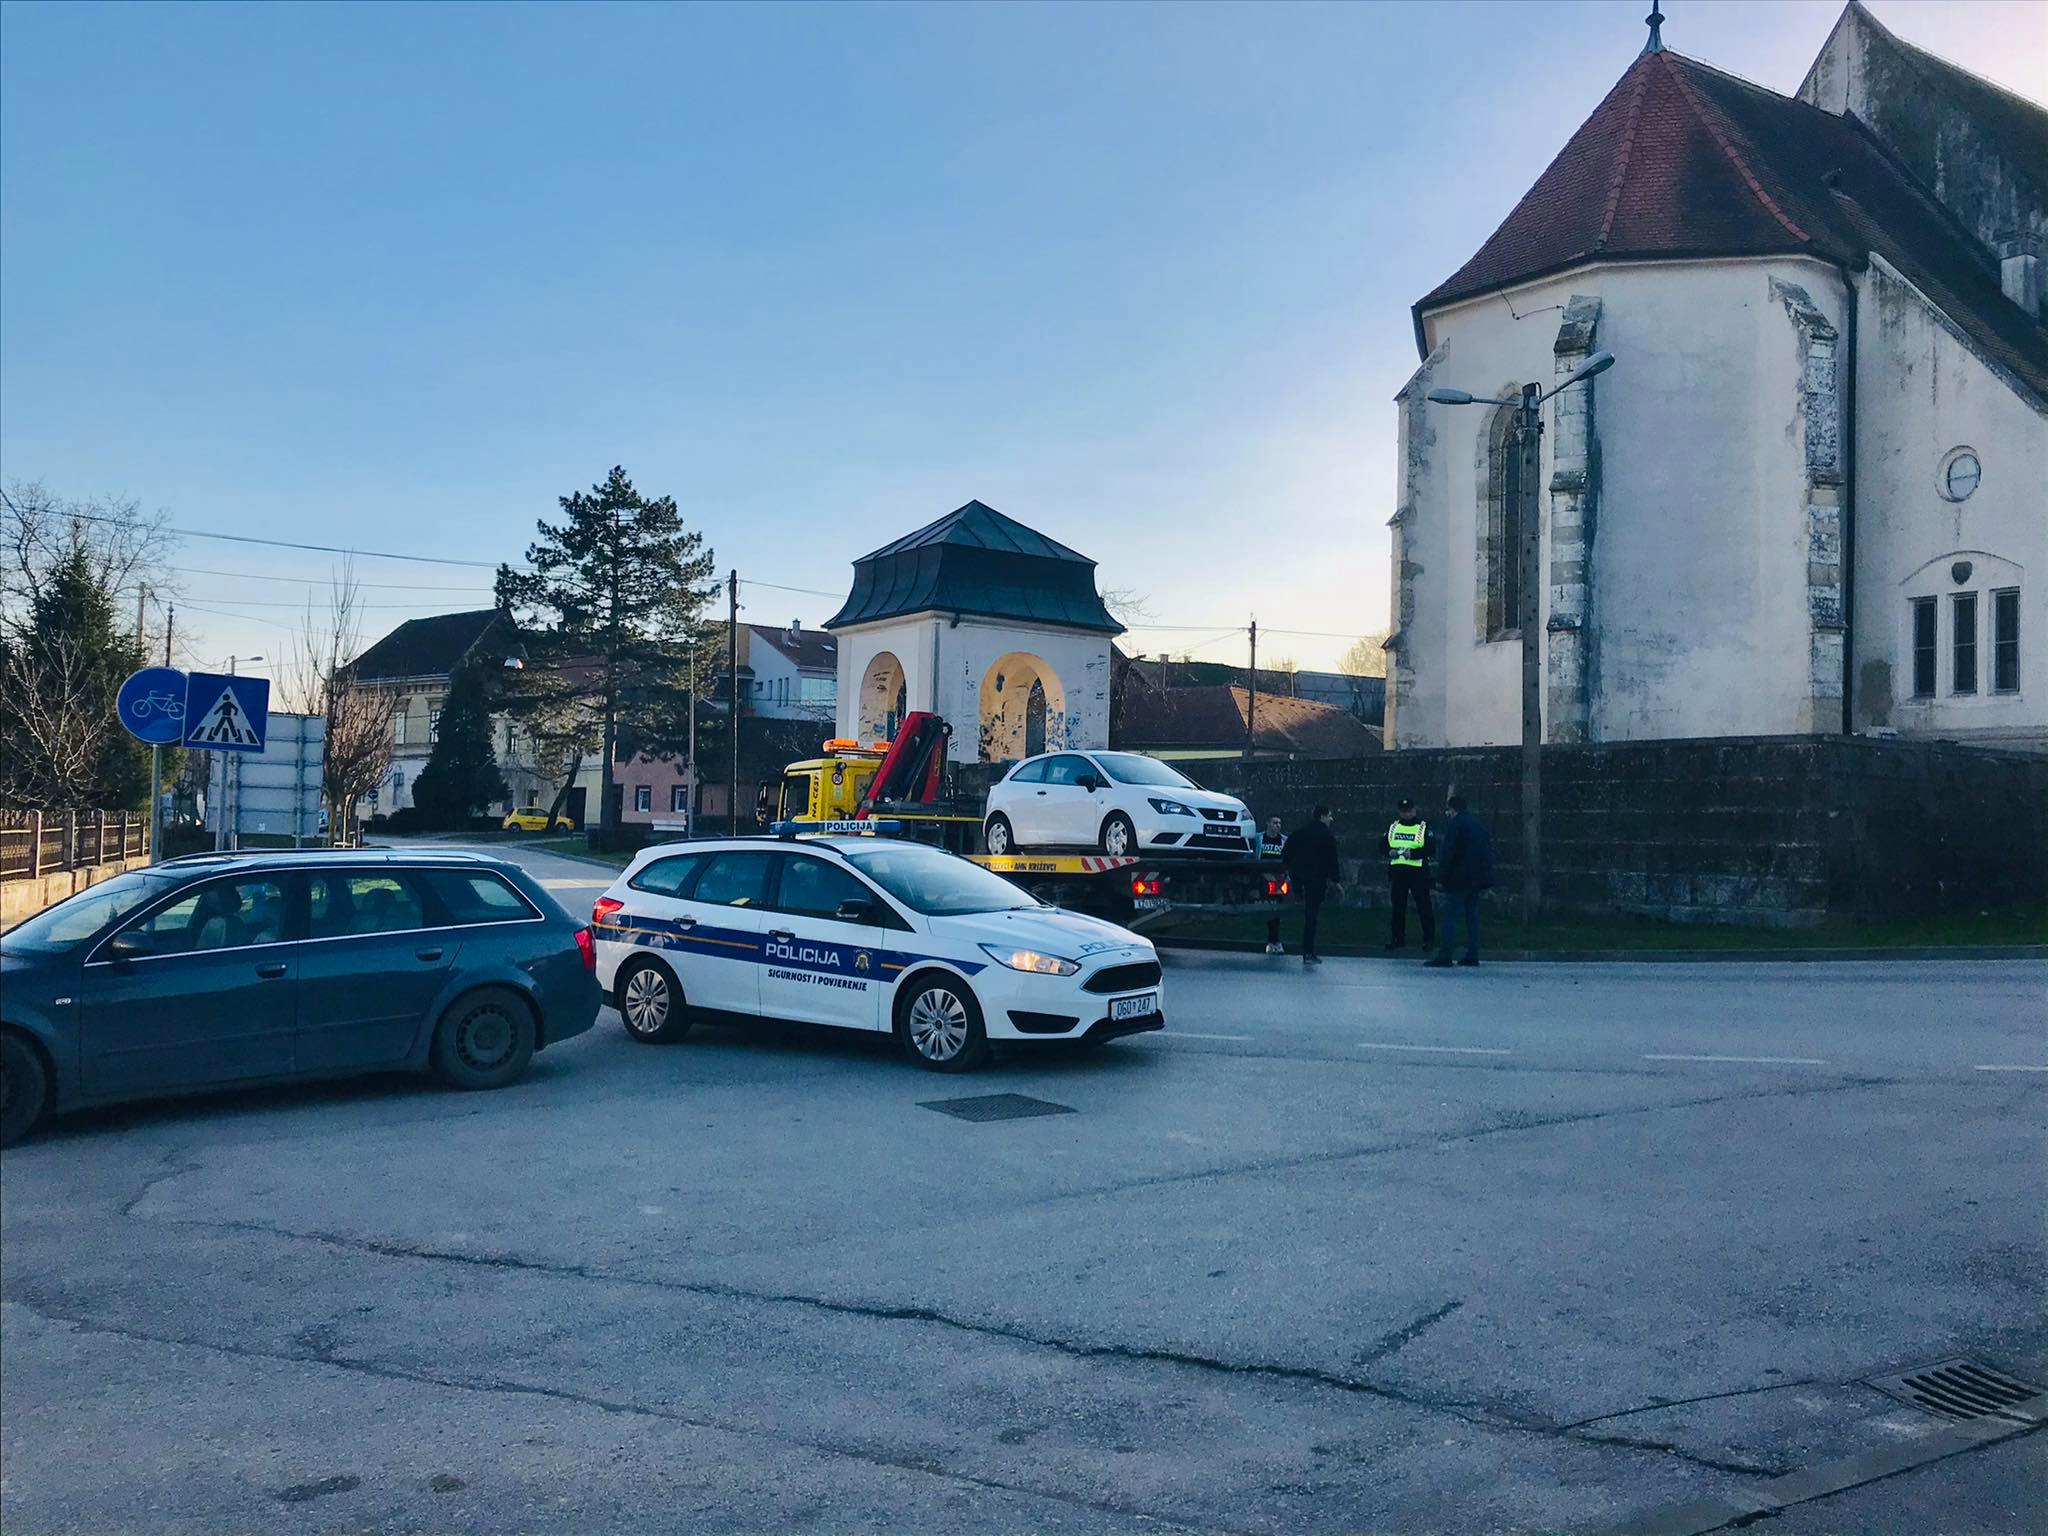 Prometna u Križevcima, promet je tijekom obavljanja policijskog očevida bio u prekidu